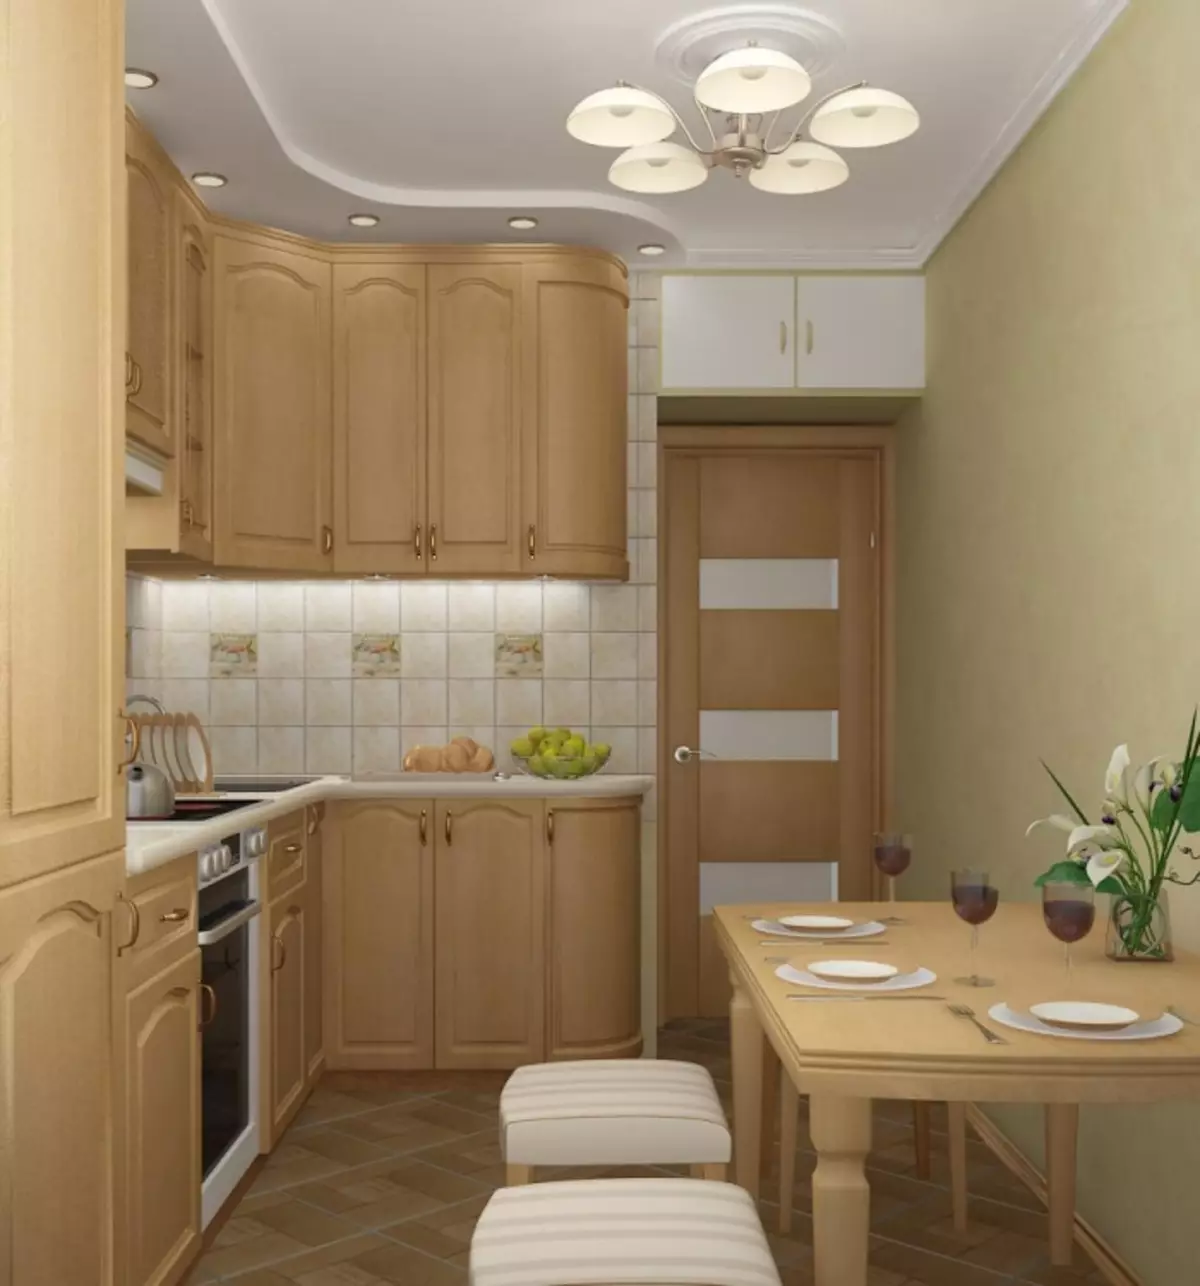 Design de cuisine 6 mètres carrés. M à Khrouchtchev (88 photos): Idées de design d'intérieur dans une petite pièce de 6 mètres carrés, tailles de cuisine et plan d'arrangement, options de réparation 9441_59